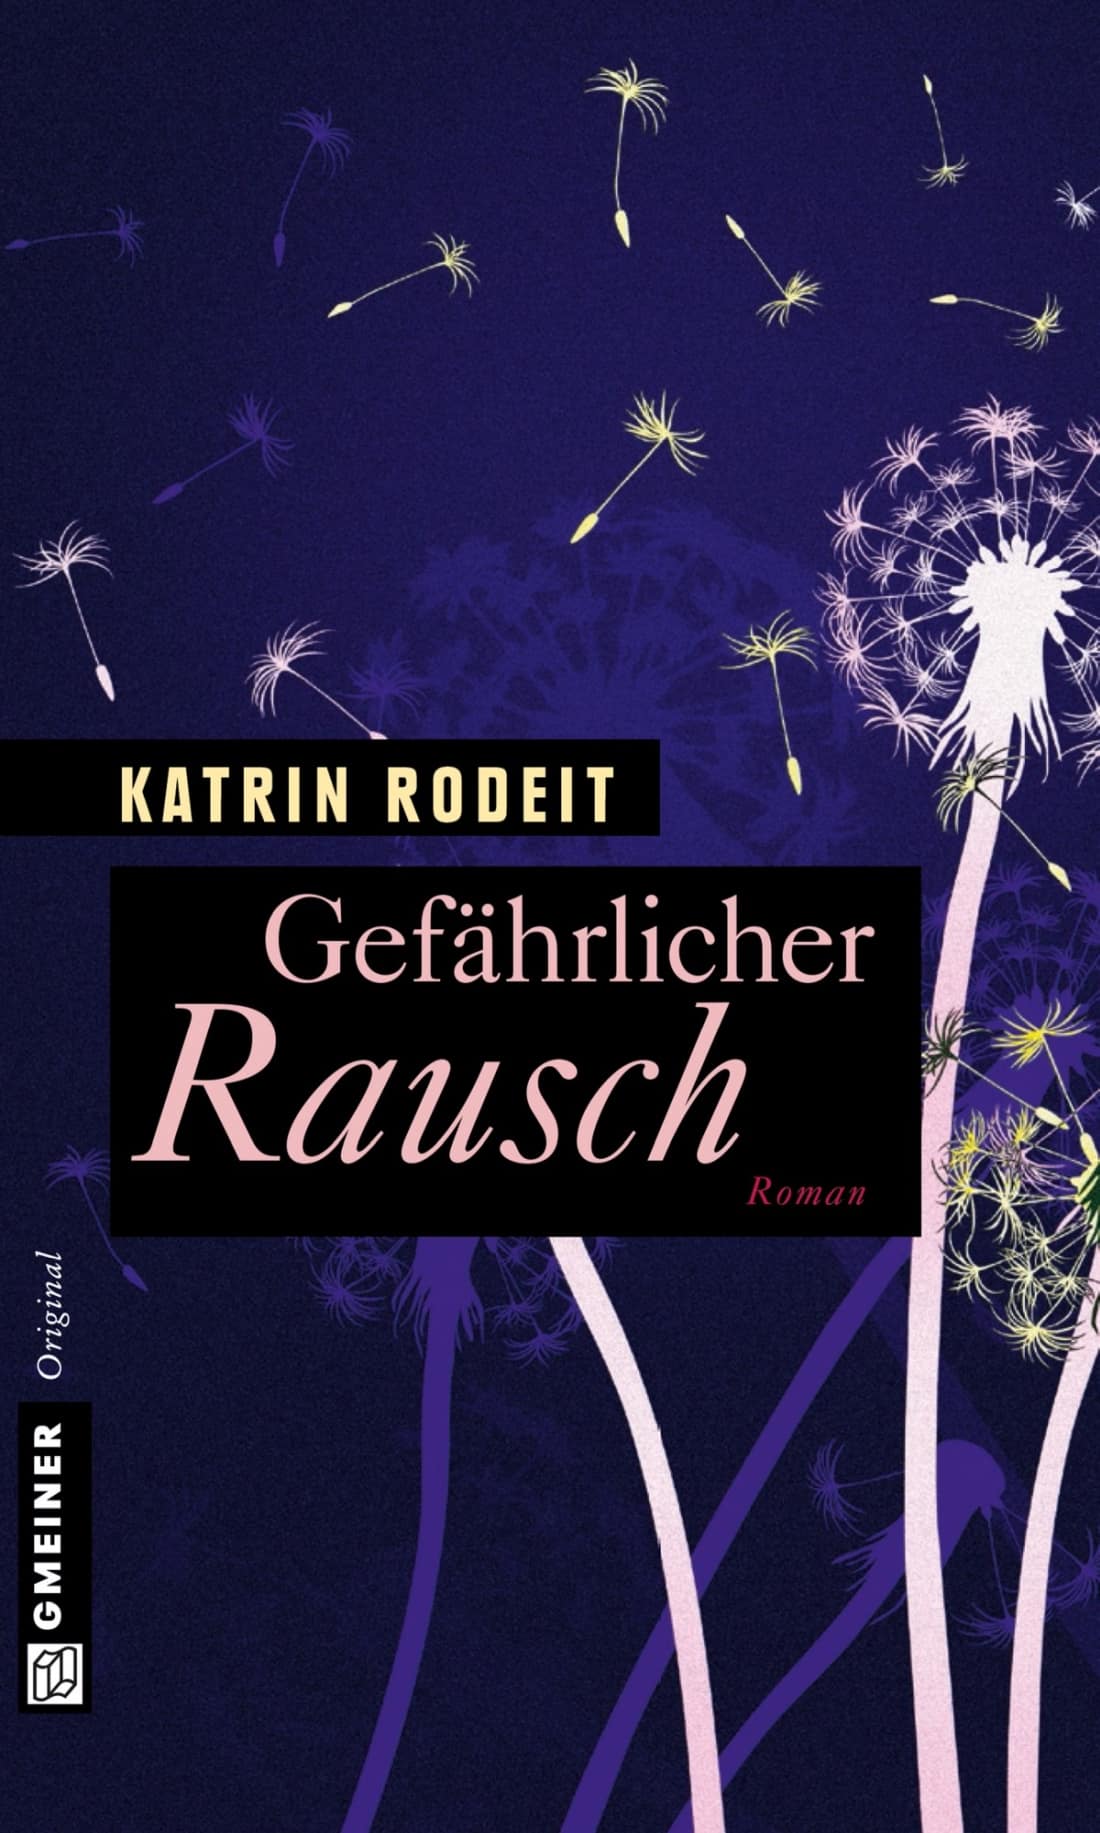 LITL023 [Podcast] Rezension: Gefährlicher Rausch – Katrin Rodeit